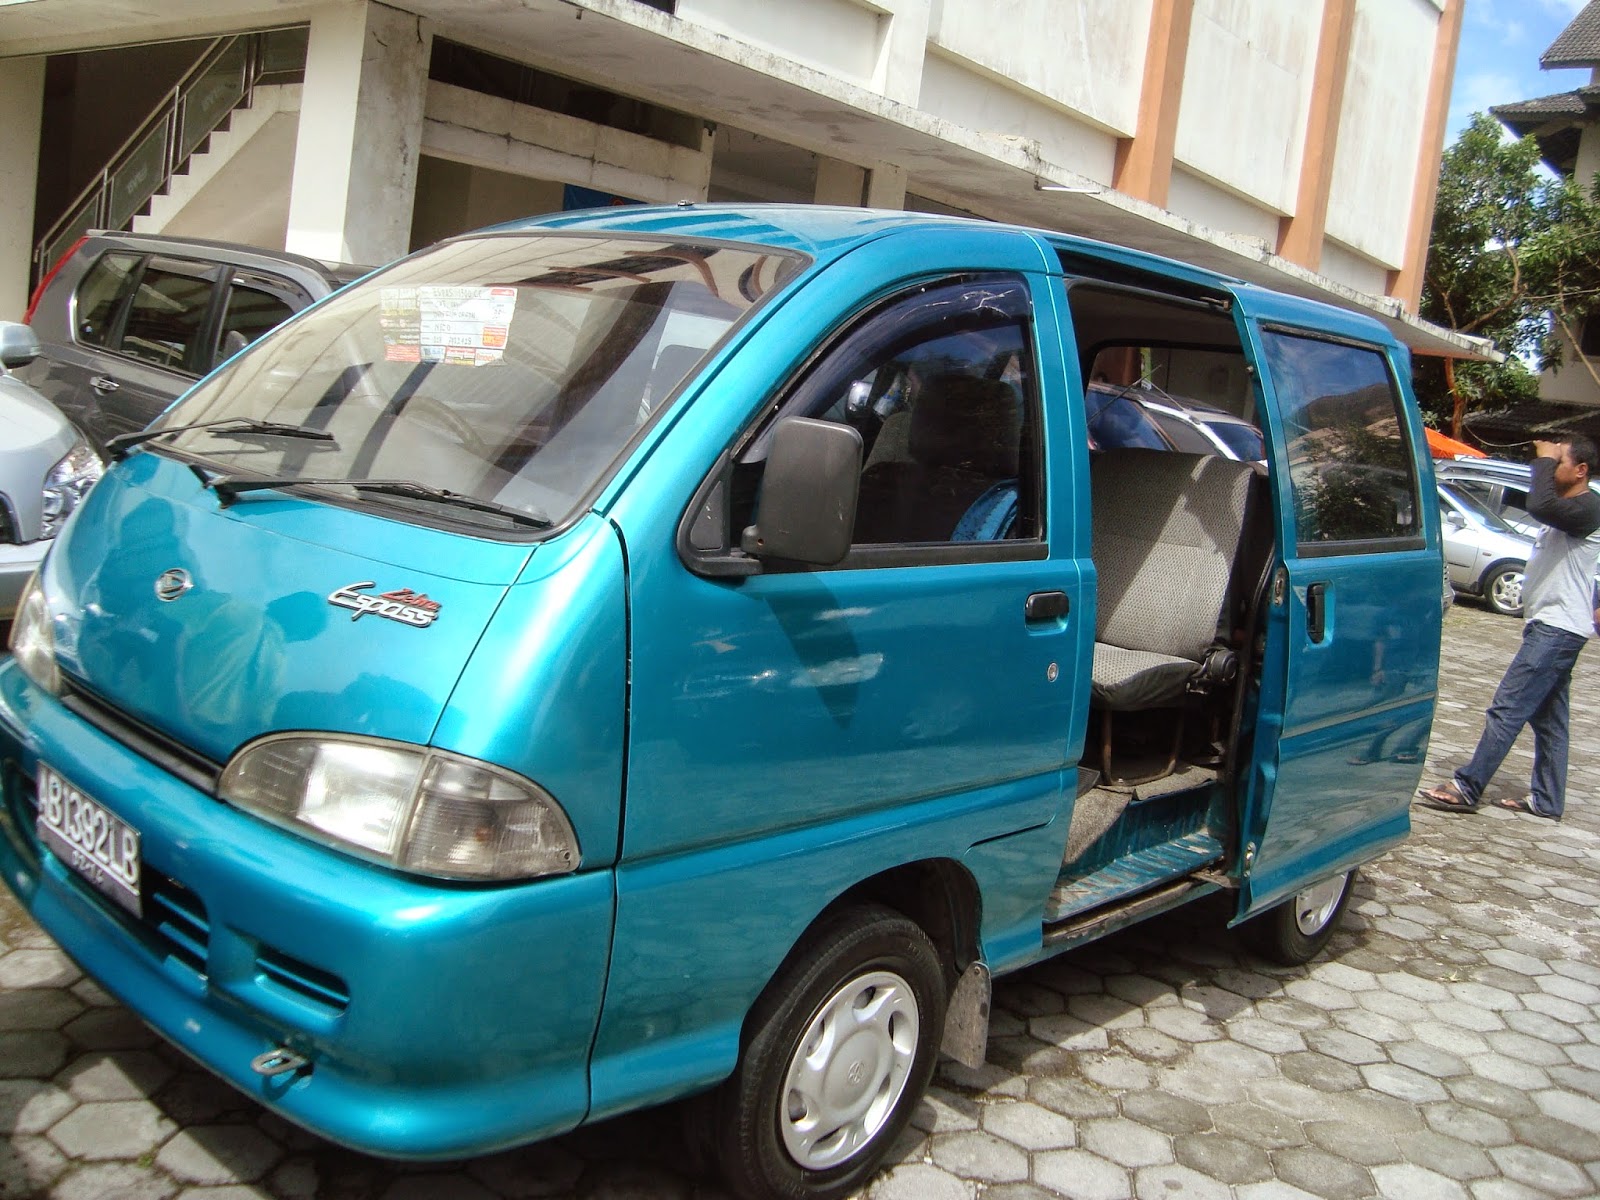 Jual Daihatsu Espass 1300 Cc Mobil Bekas Murah Di Yogyakarta